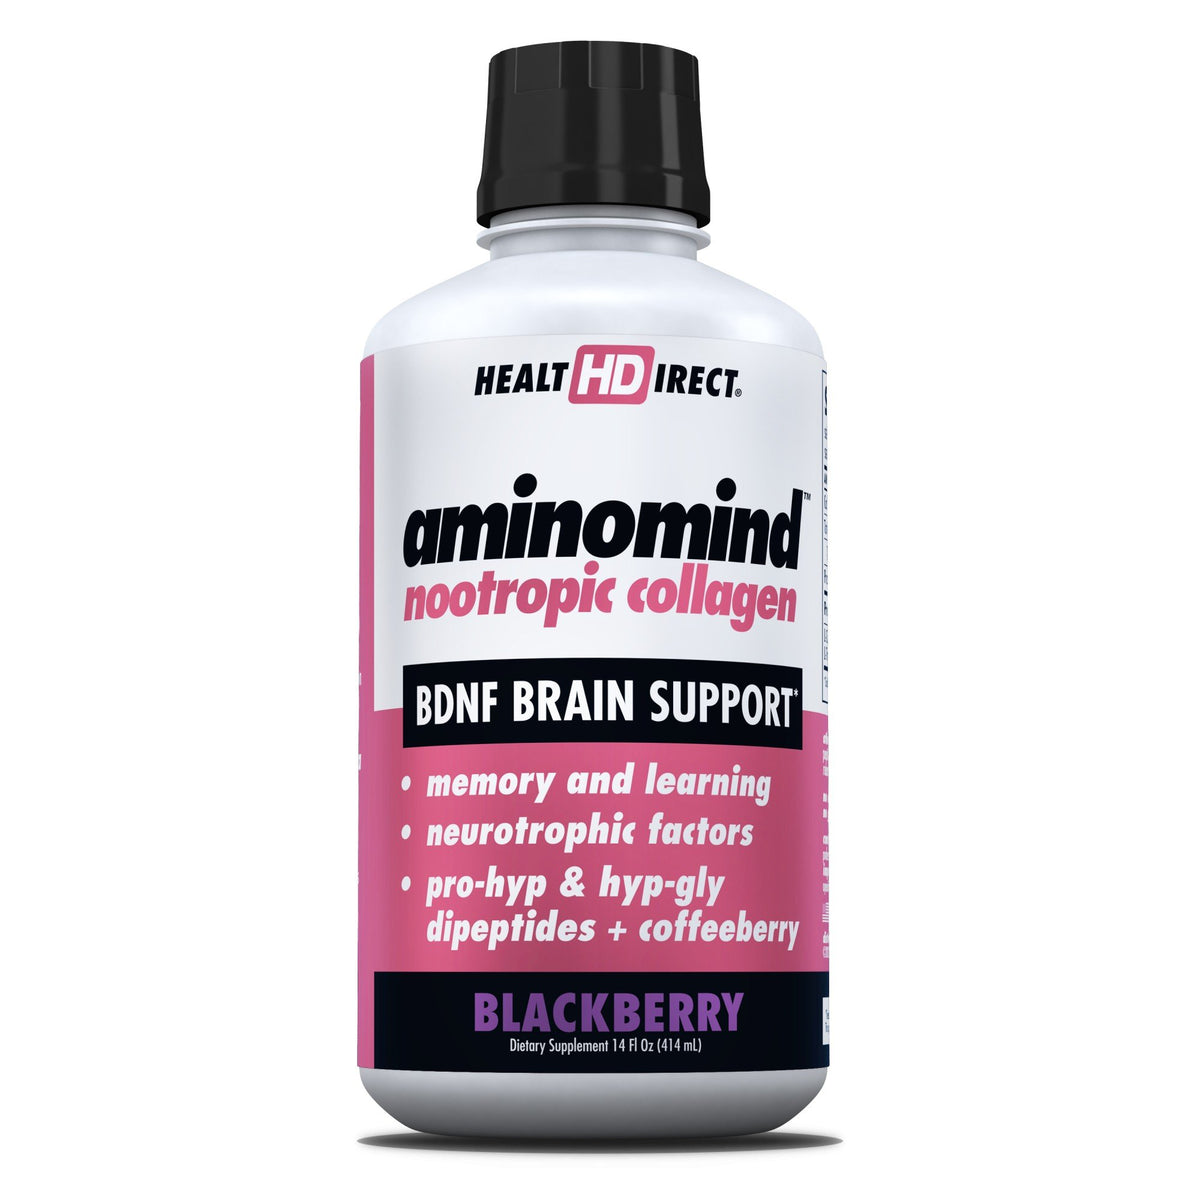 Health Direct AminoMind Nootropic Collagen-BDNF Brain Support-Blackberry 14 fl oz. Liquid